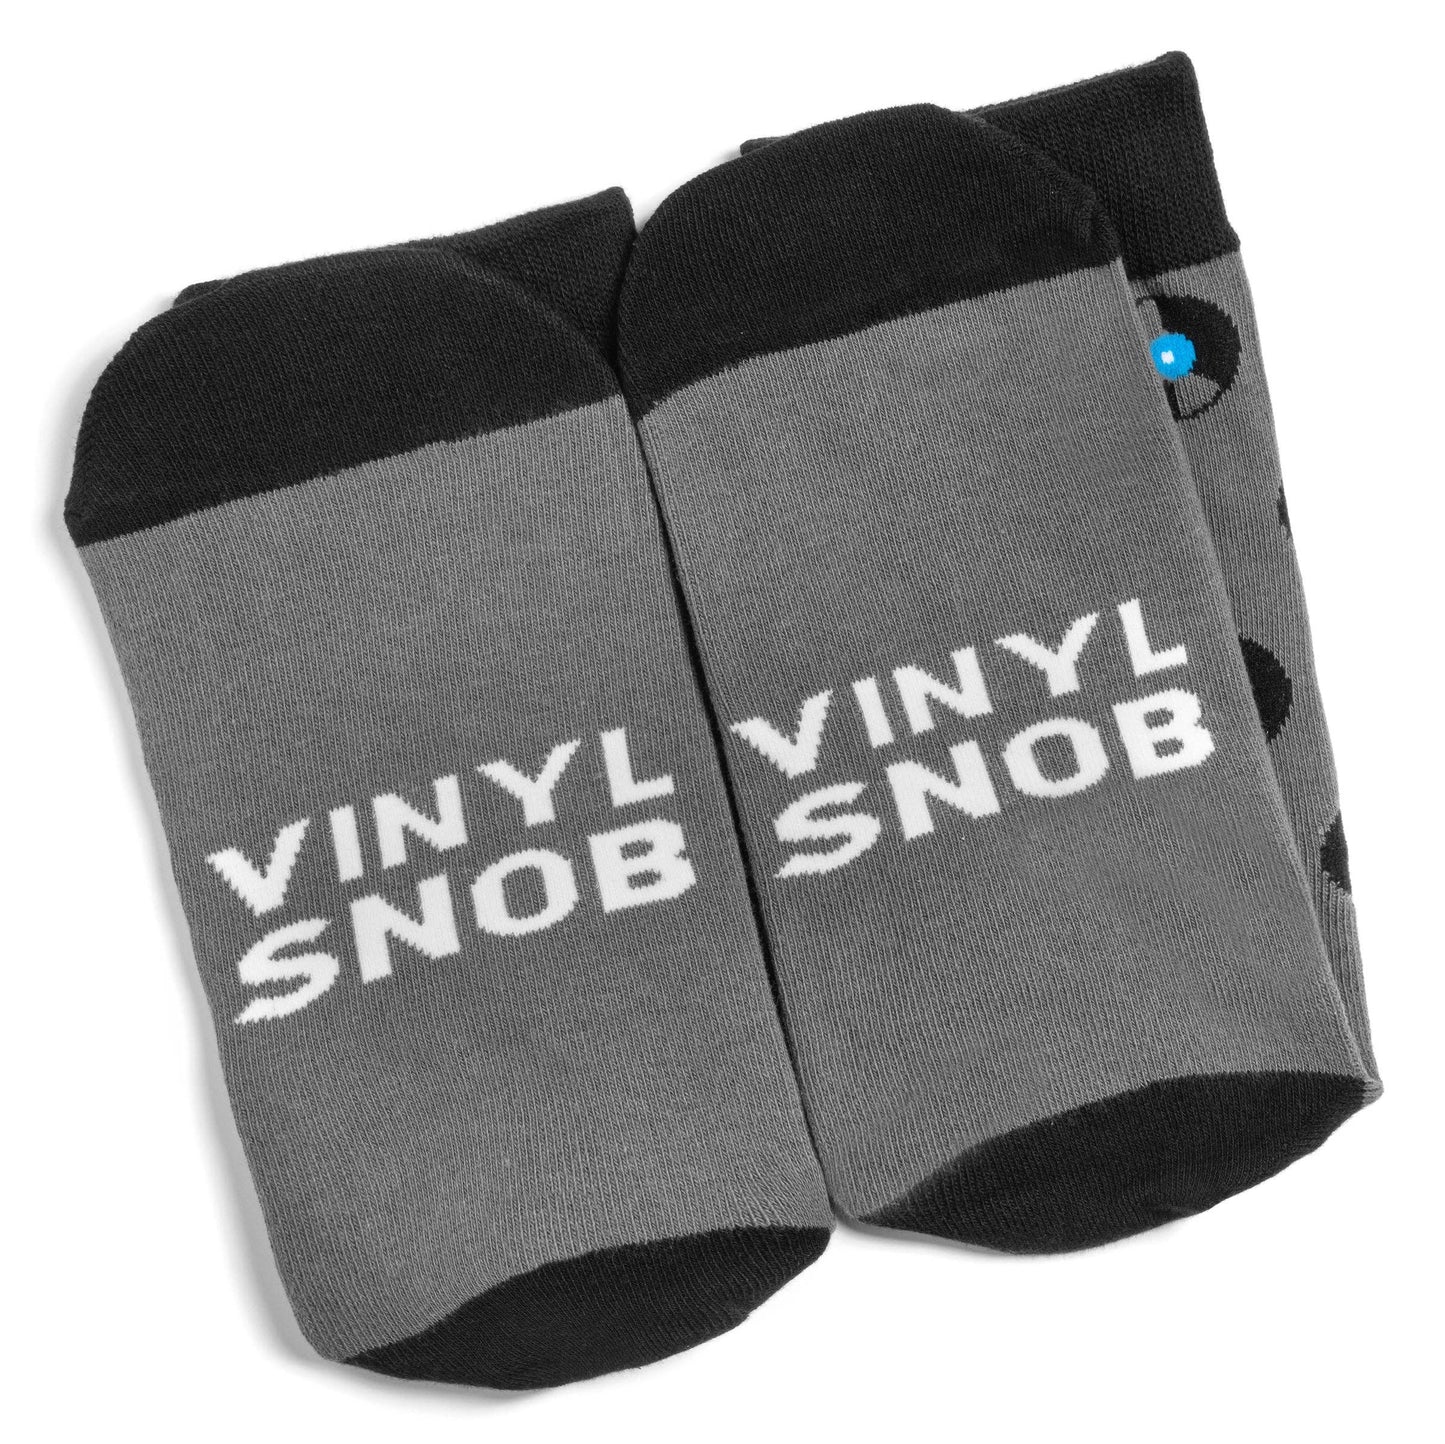 Lavley - Vinyl Snob Socks